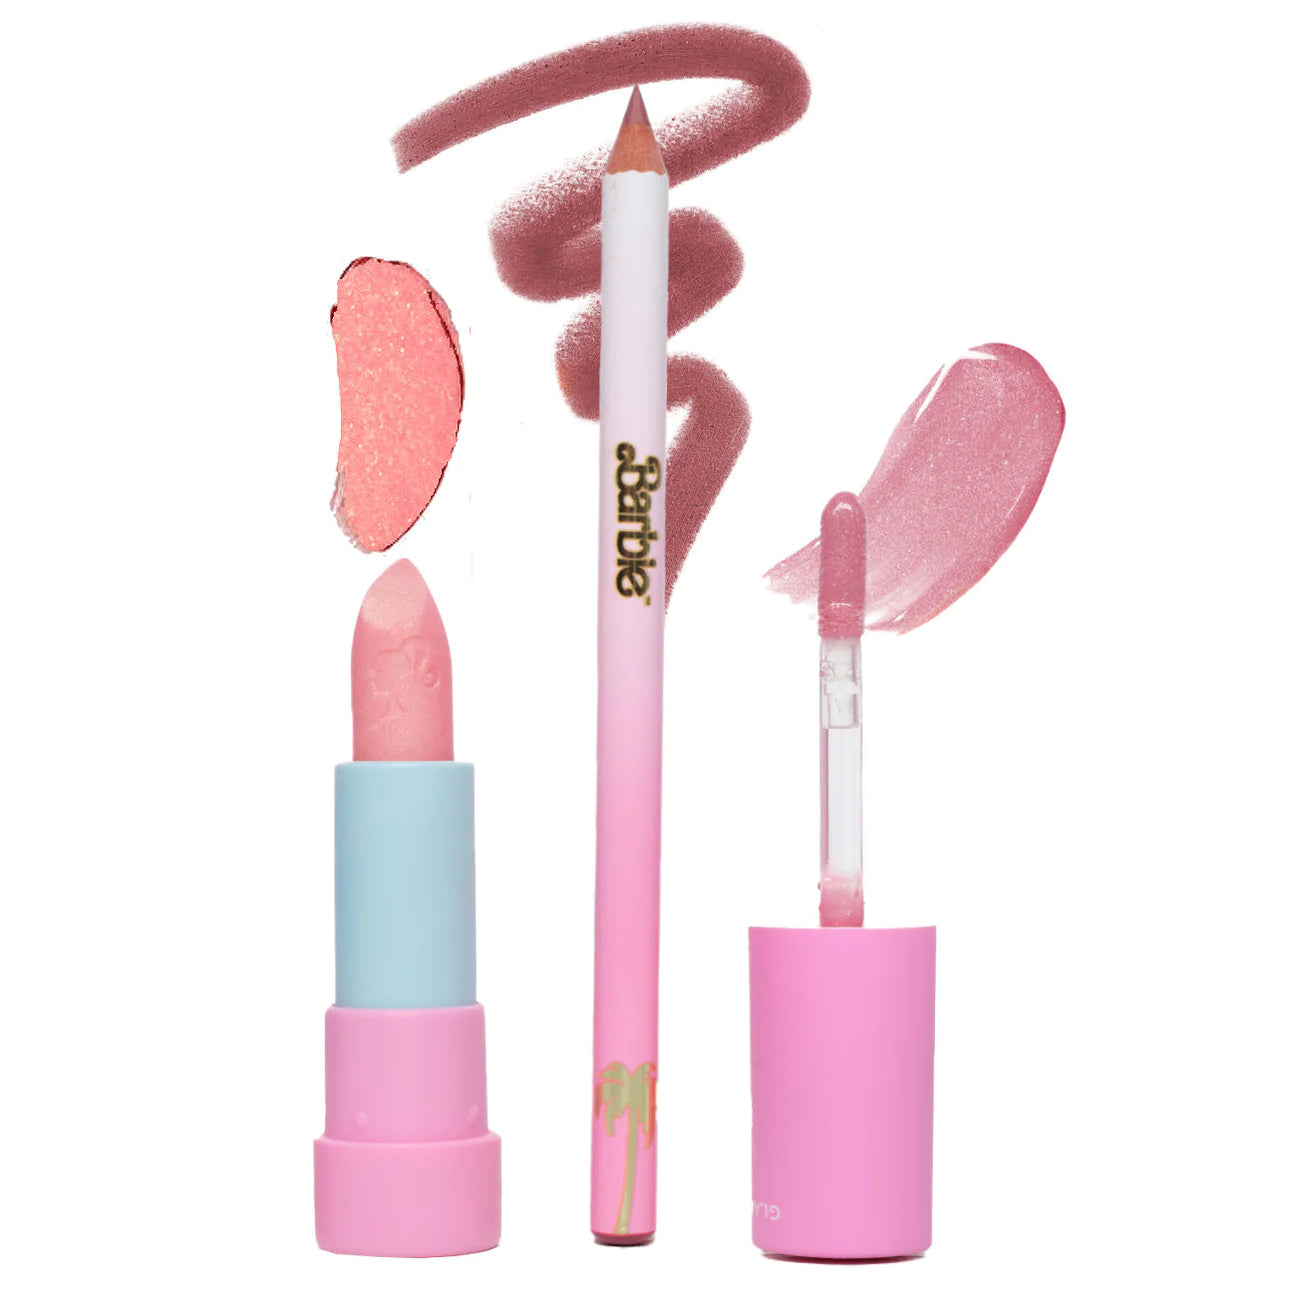 GLAMLITE, Barbie X Glamlite out of office lip kit.